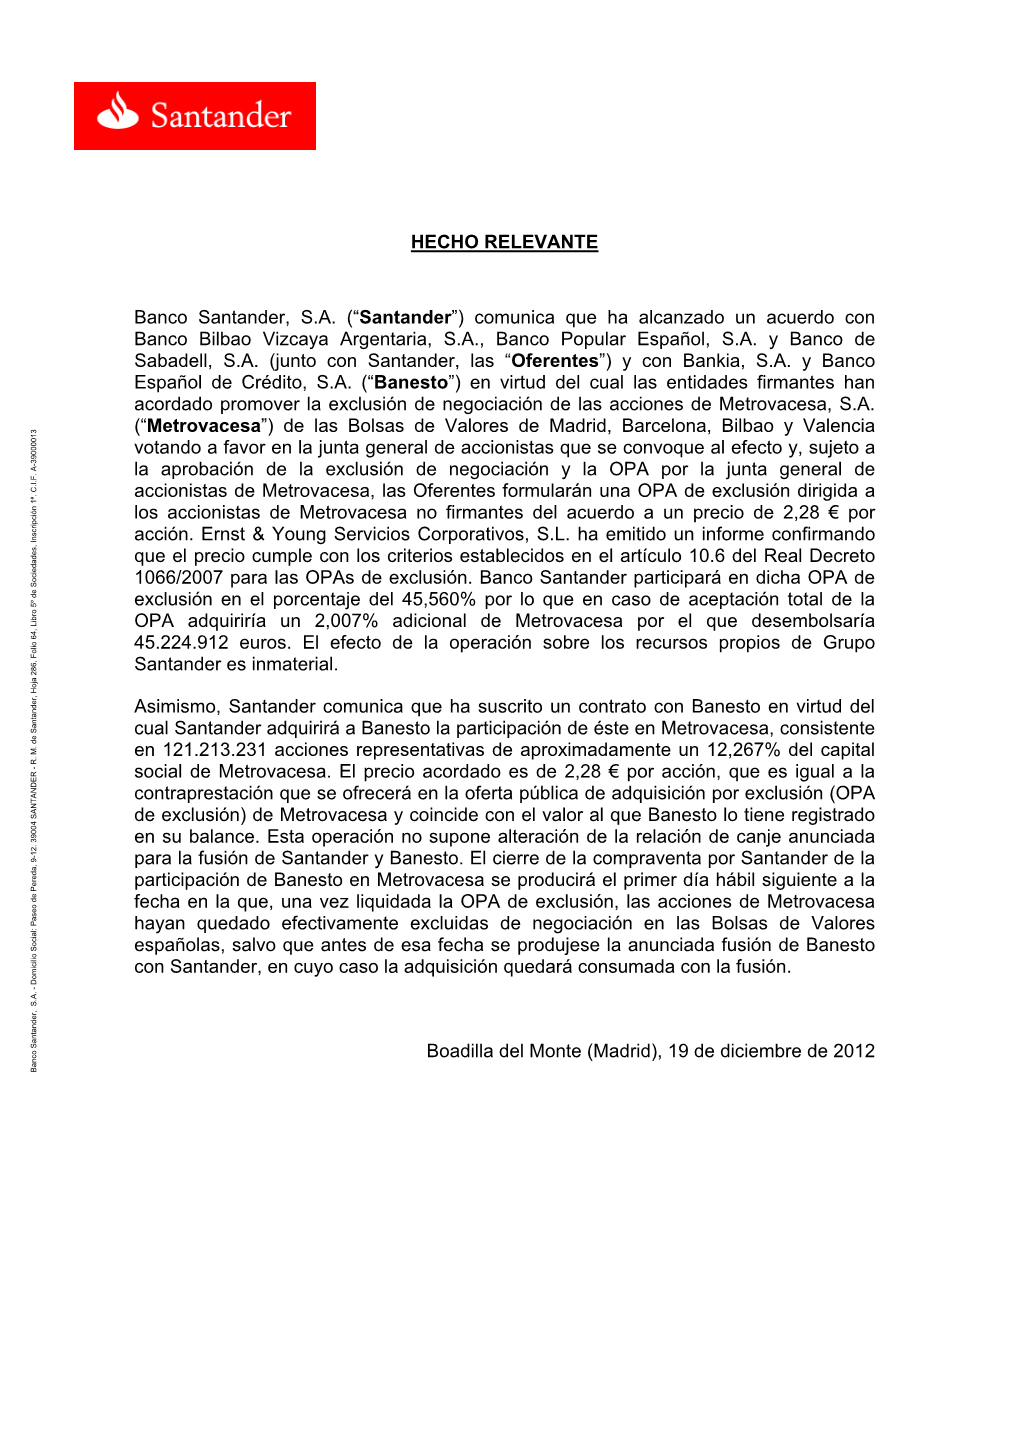 (“Santander”) Comunica Que Ha Alcanzado Un Acuerdo Con Banco Bilbao Vizcaya Argentaria, S.A., Banco Popular Español, S.A